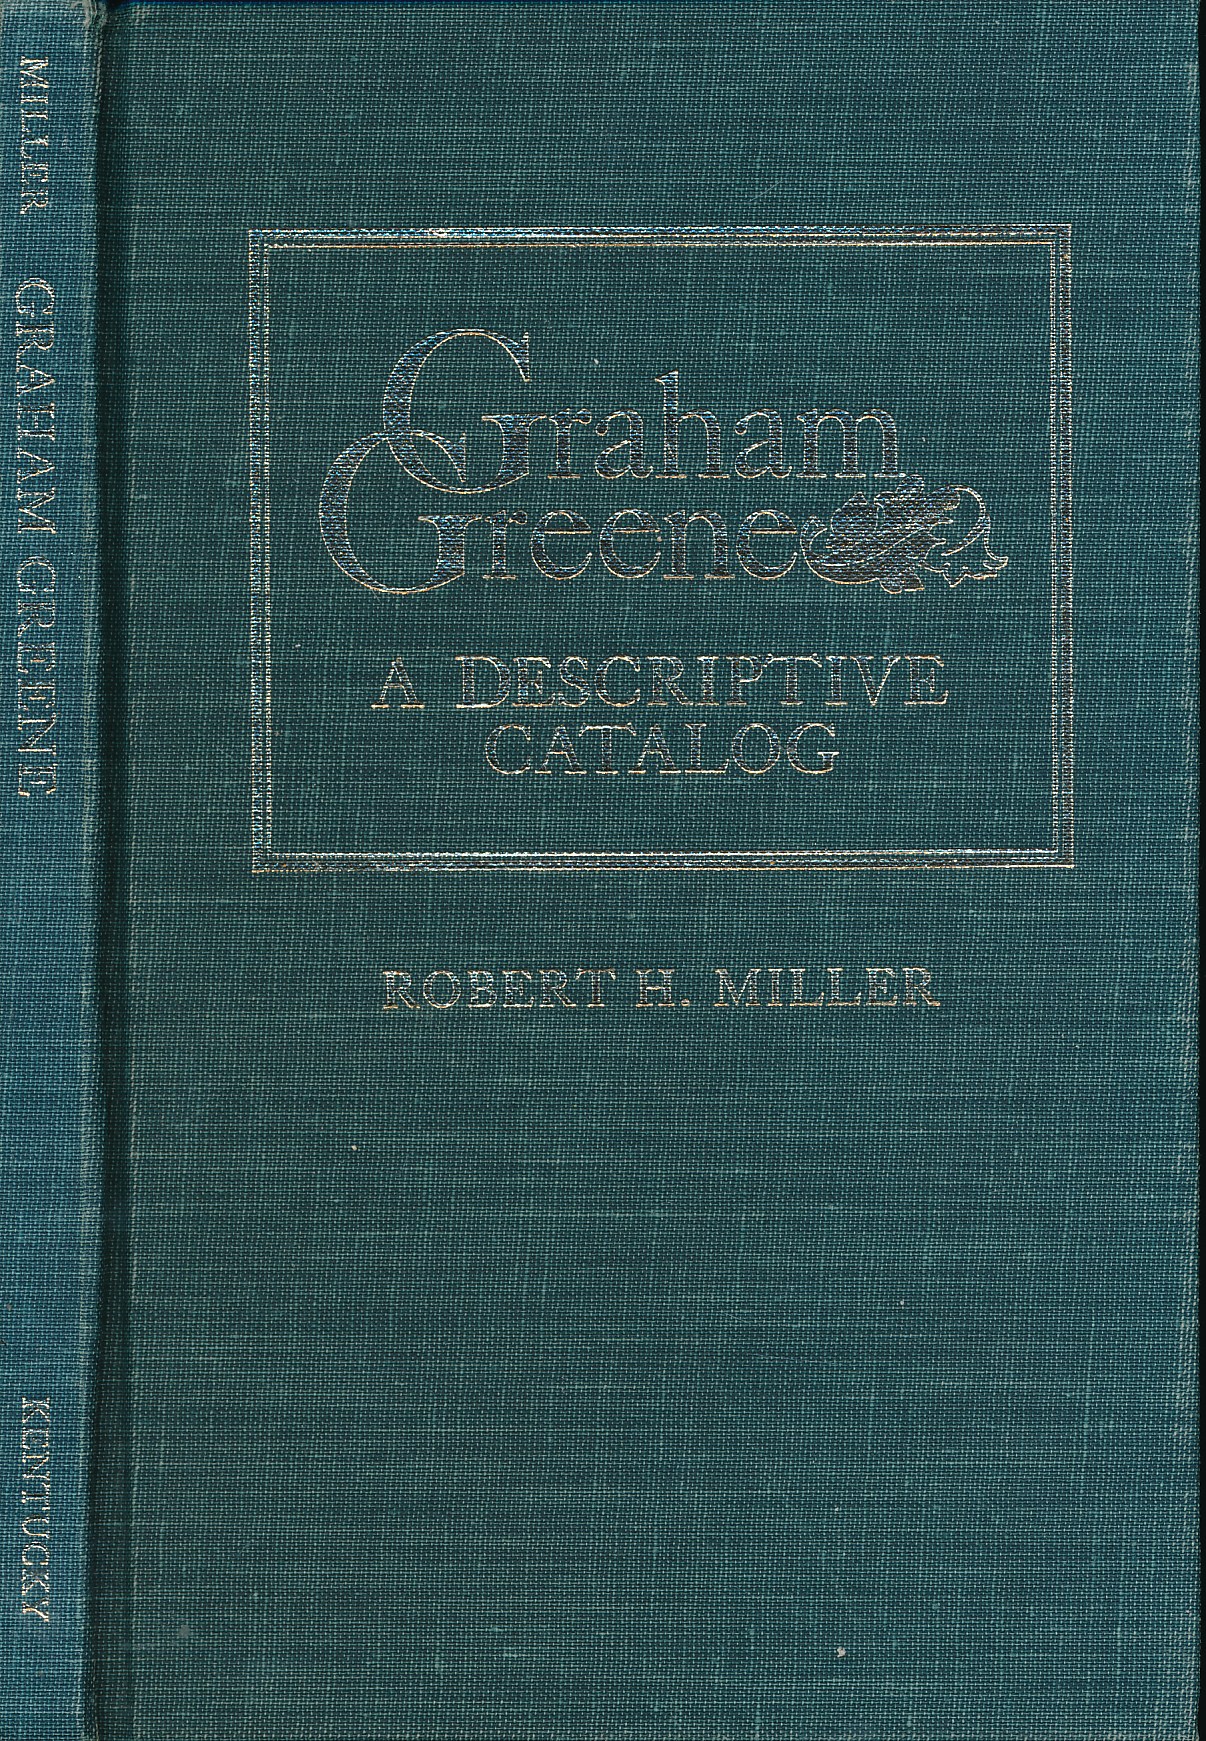 Graham Greene: A Descriptive Catalog